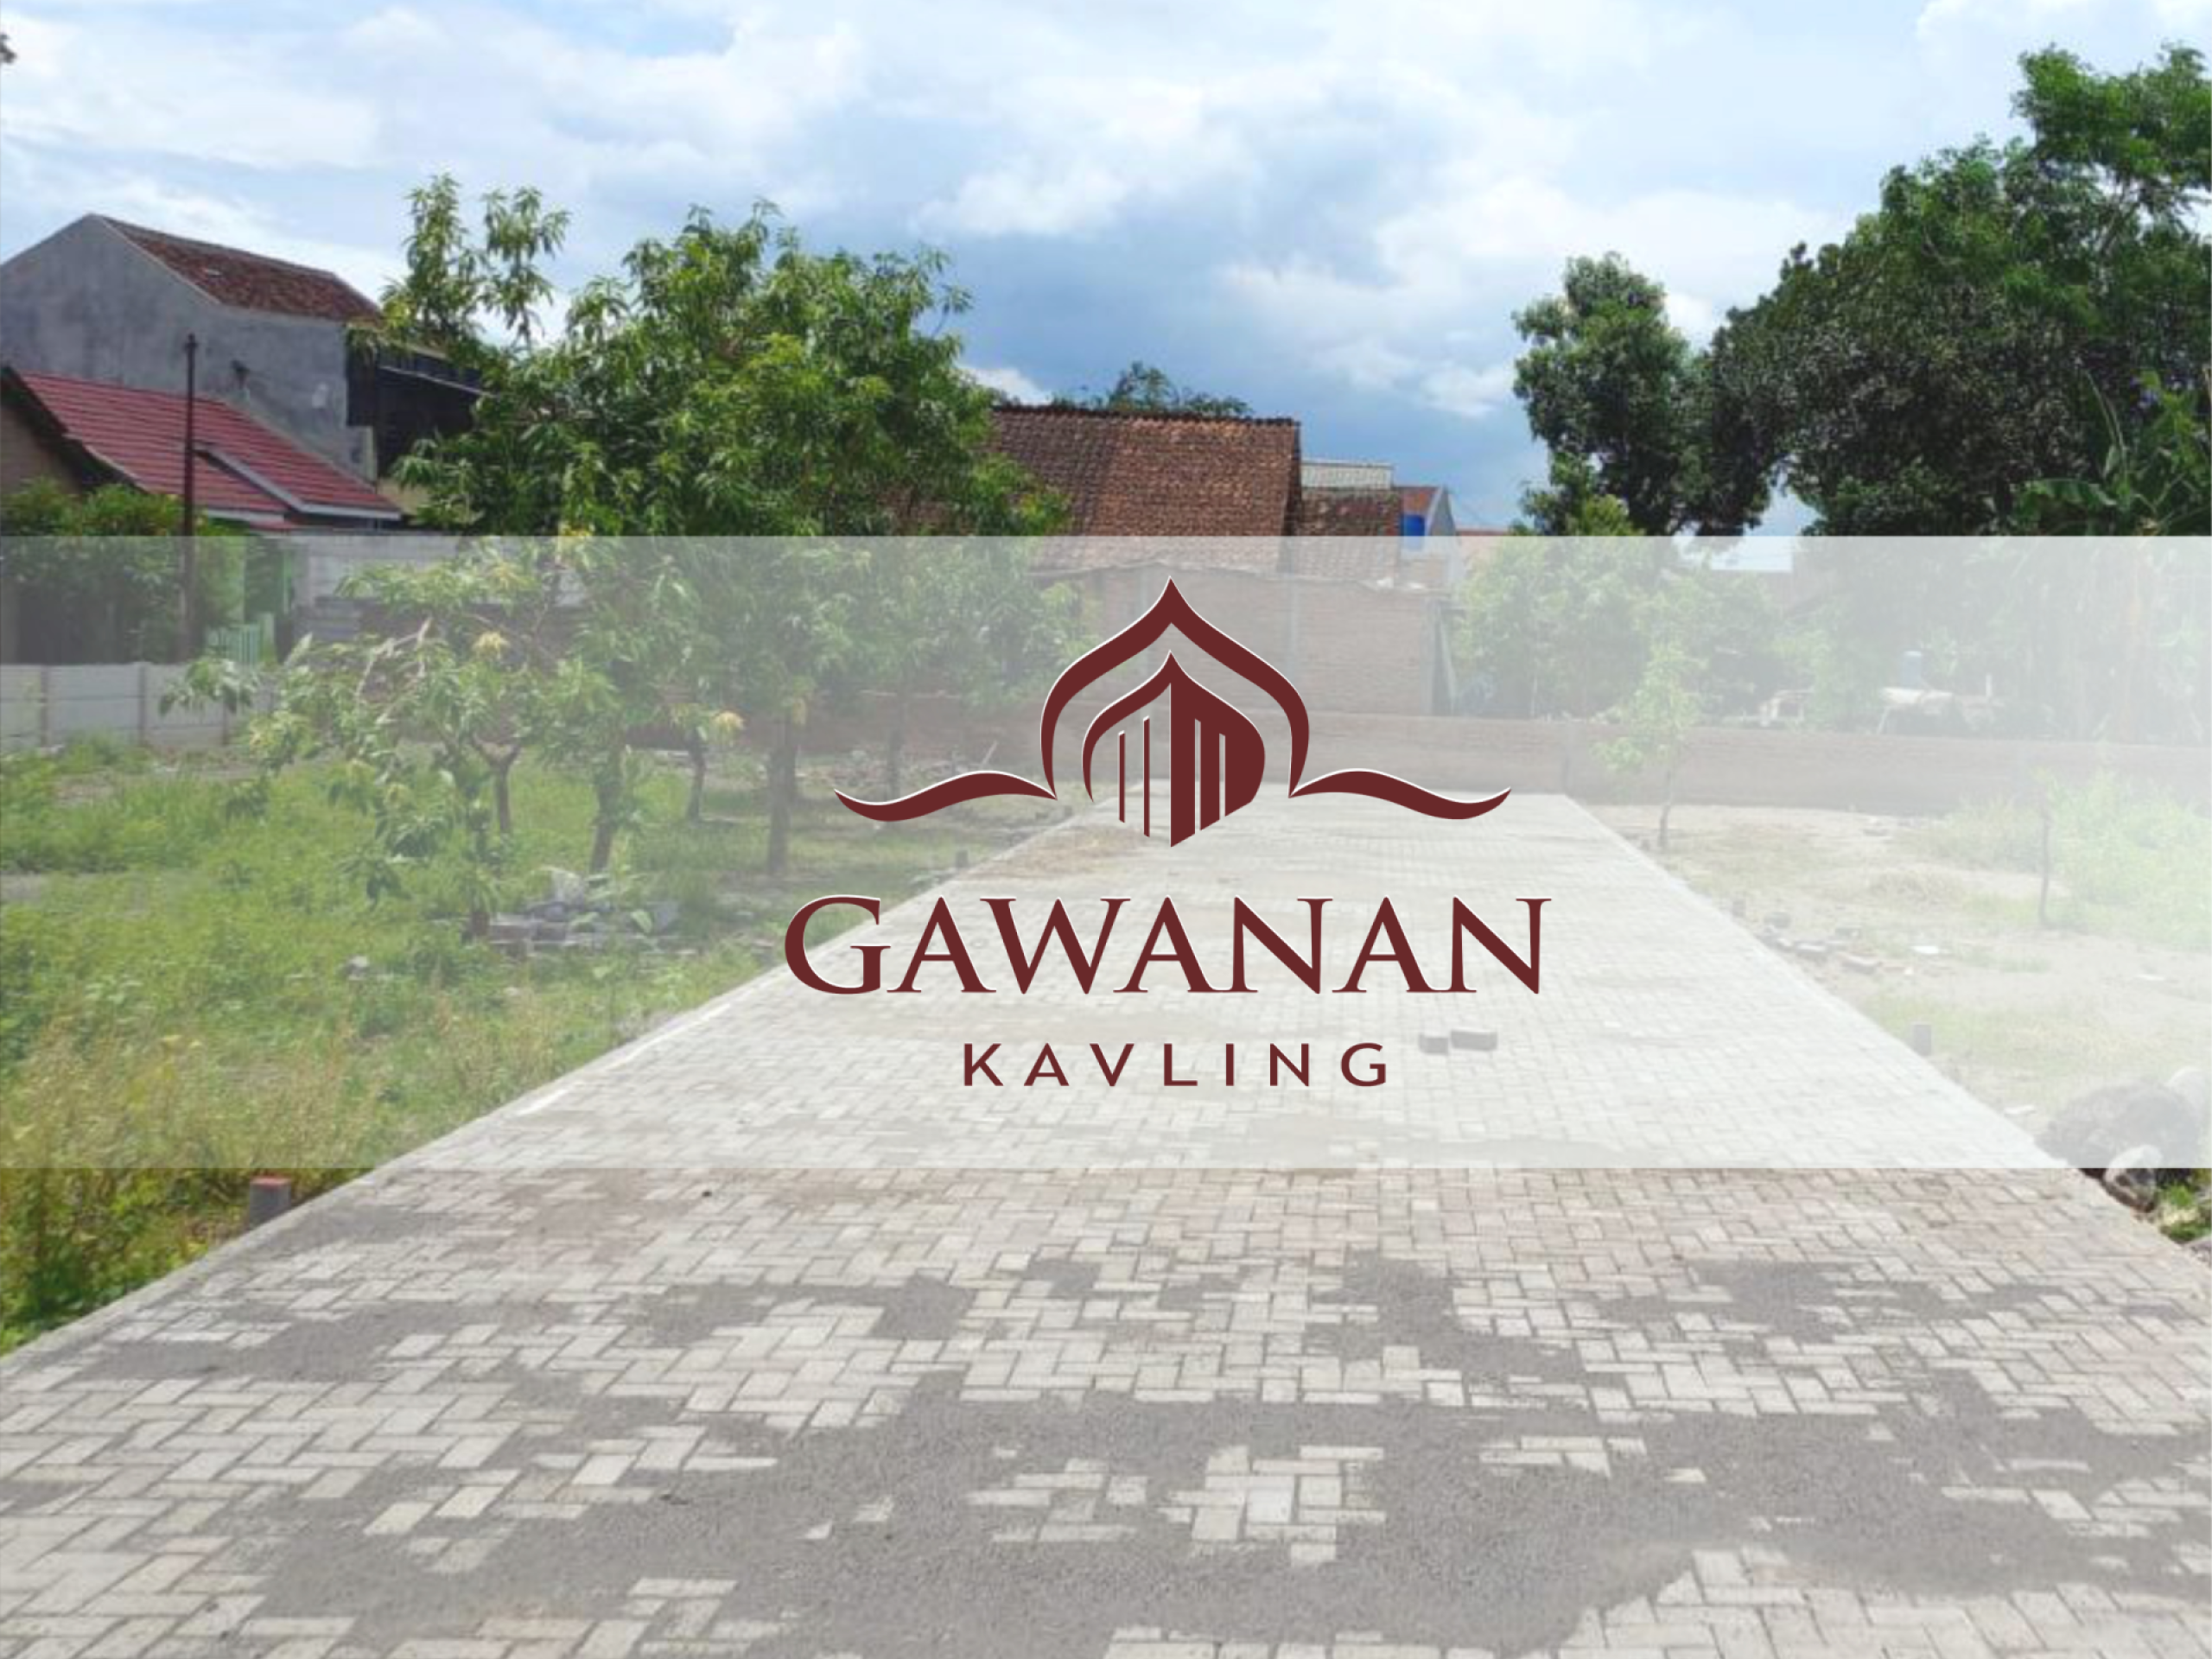 Gawanan Kavling